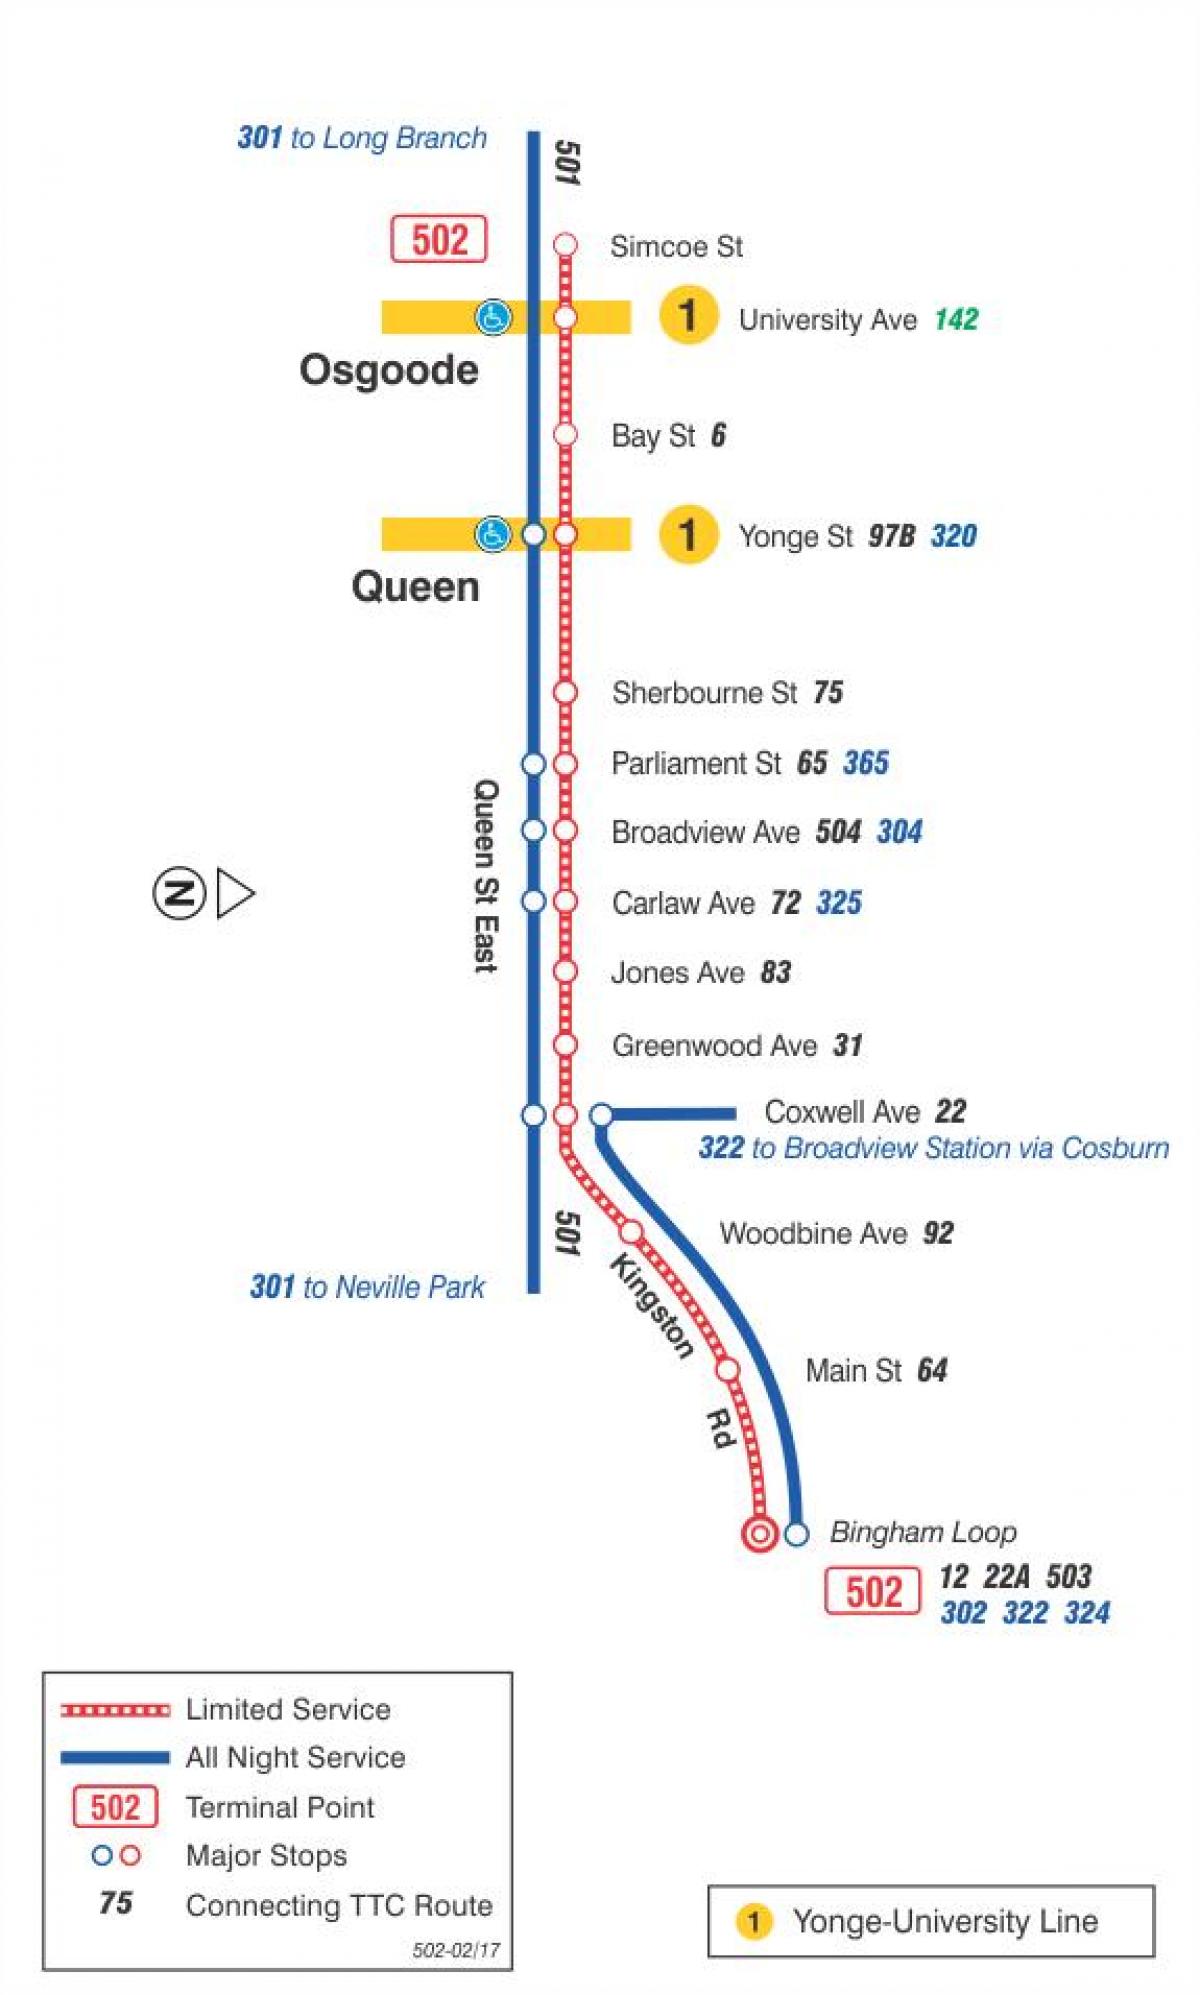 La mappa dei tram linea 502 Downtowner